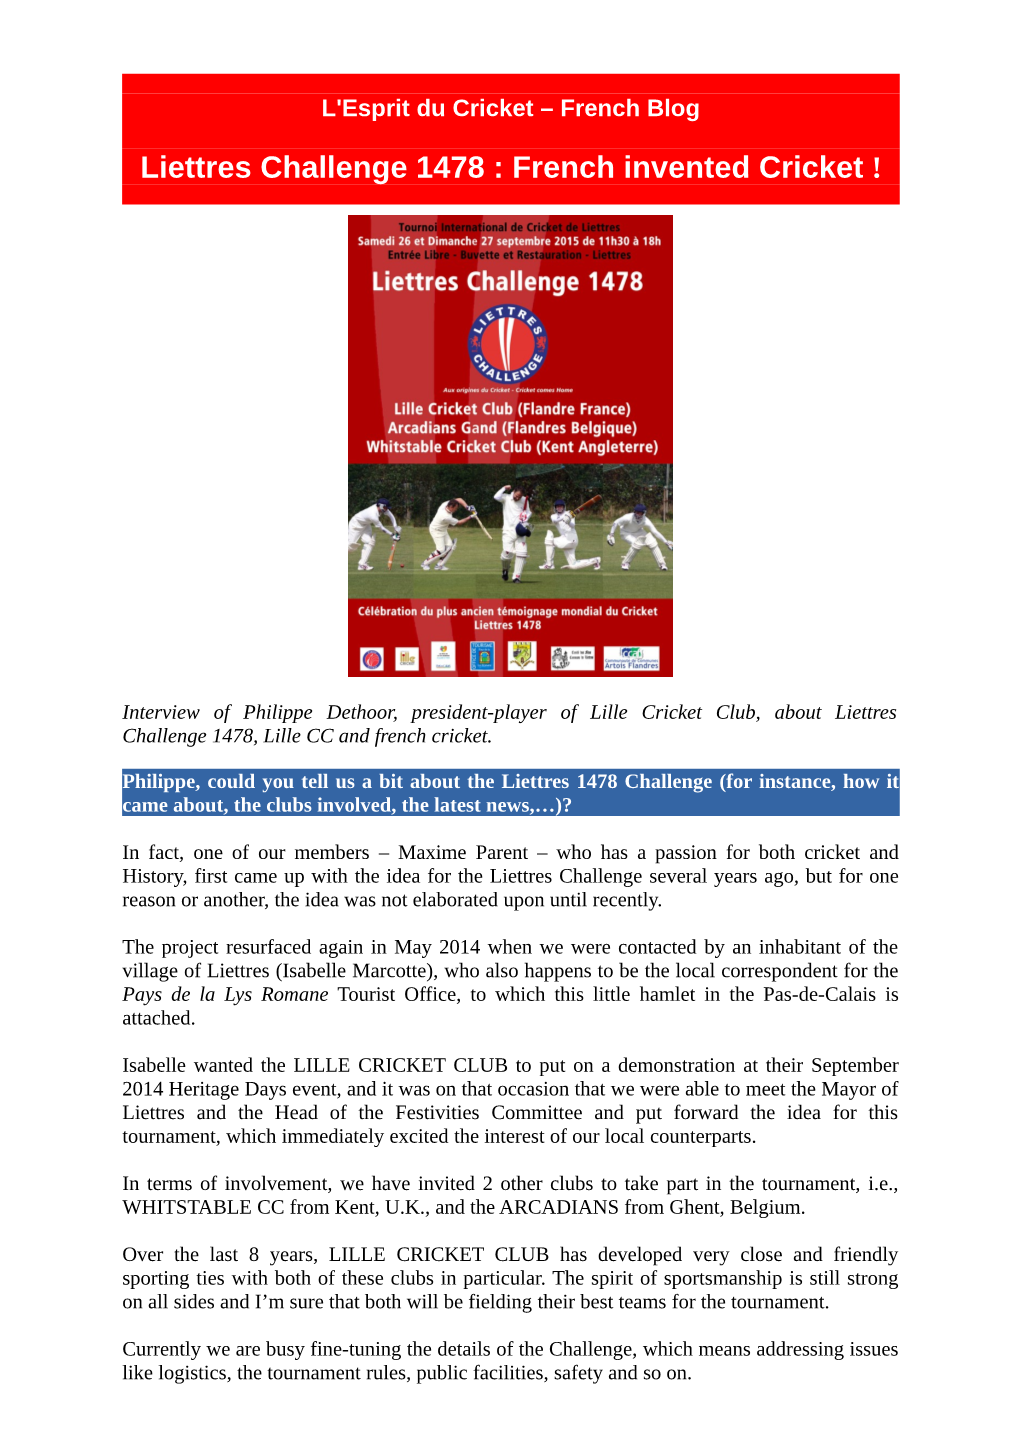 Liettres Challenge 1478 : French Invented Cricket !